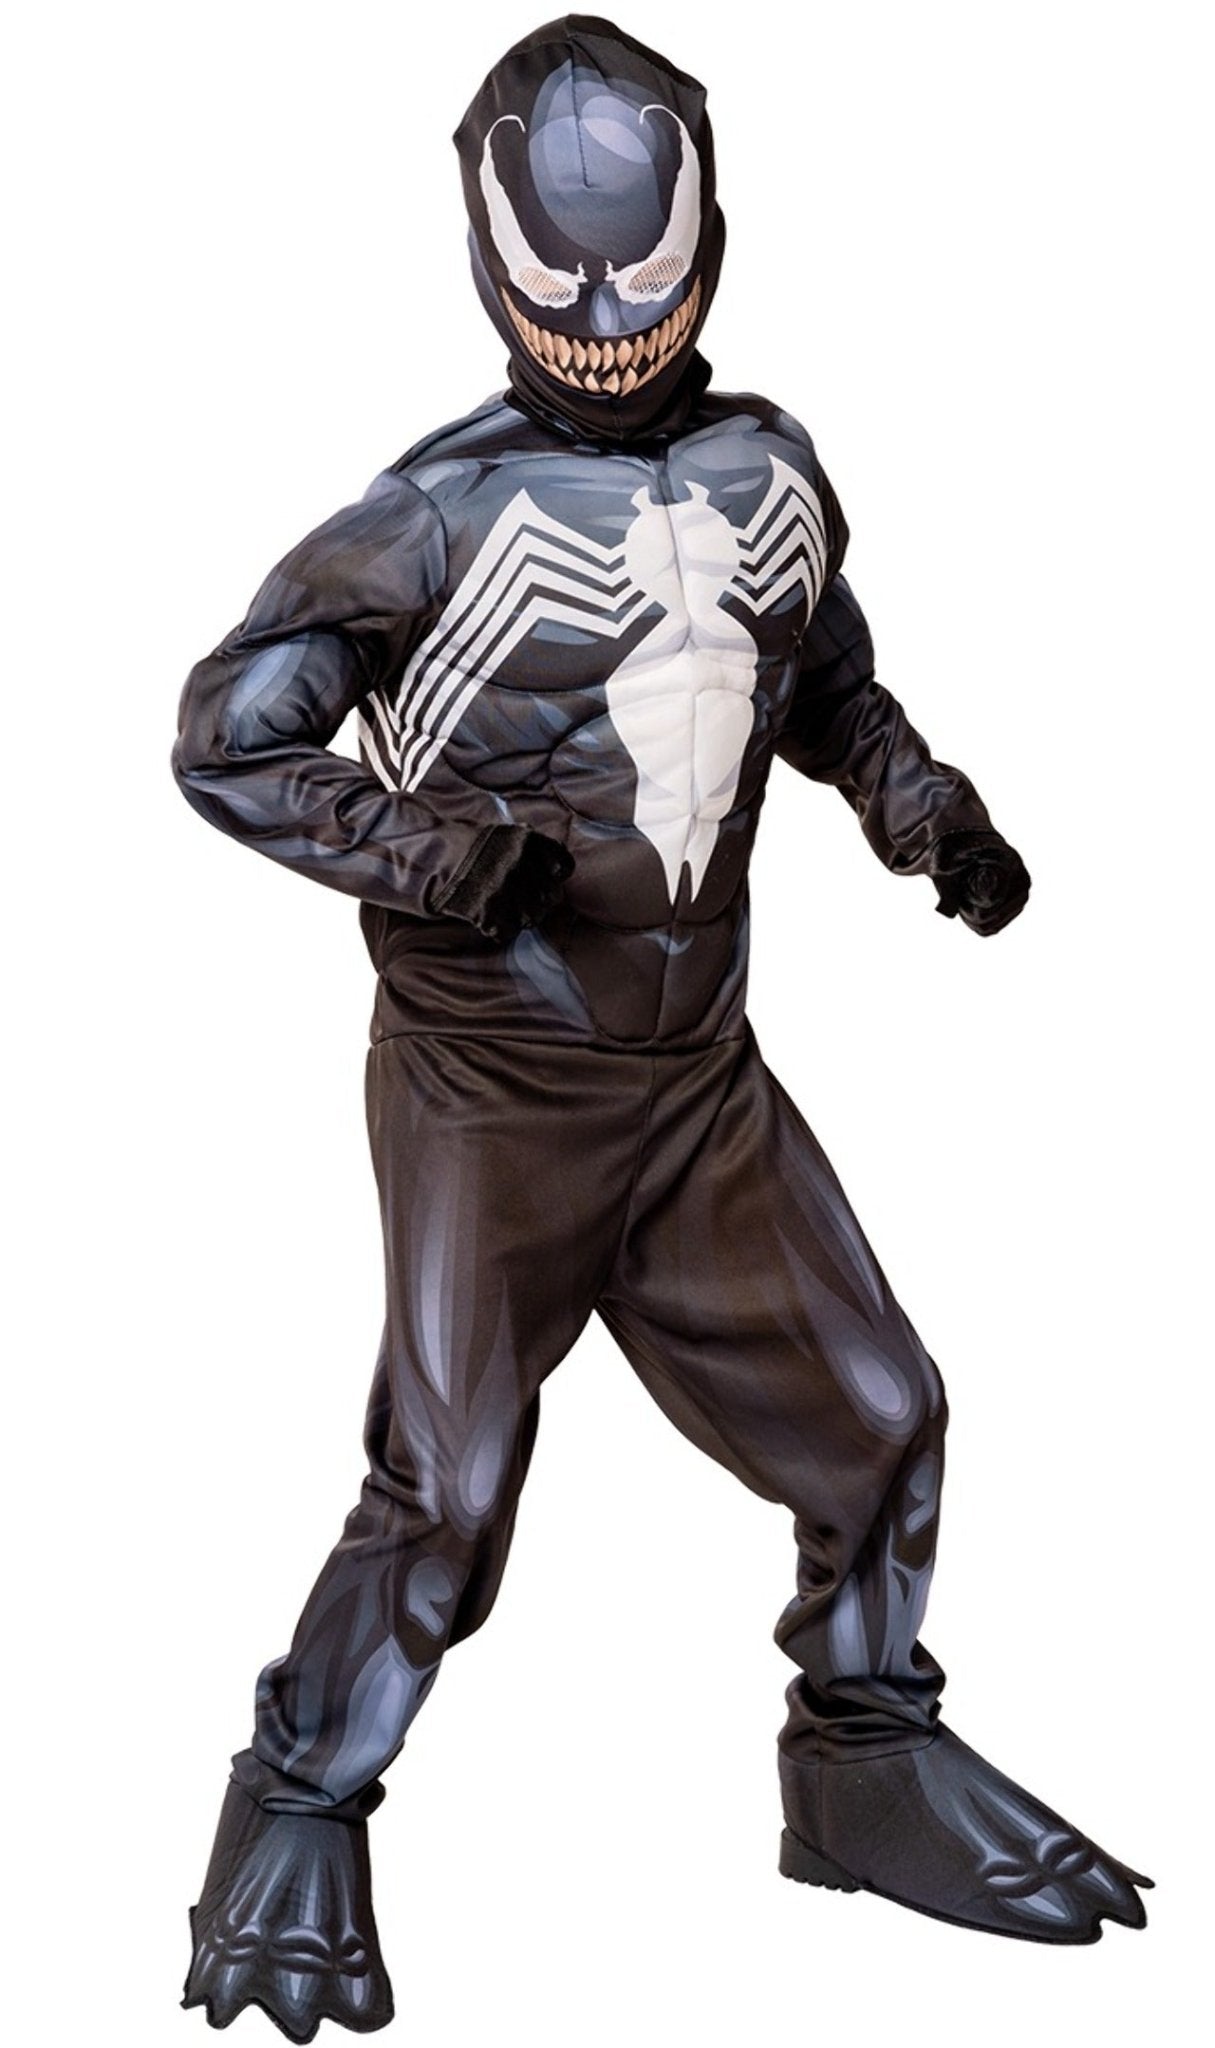 Acquista online il costume da Venom? Bambini Deluxe